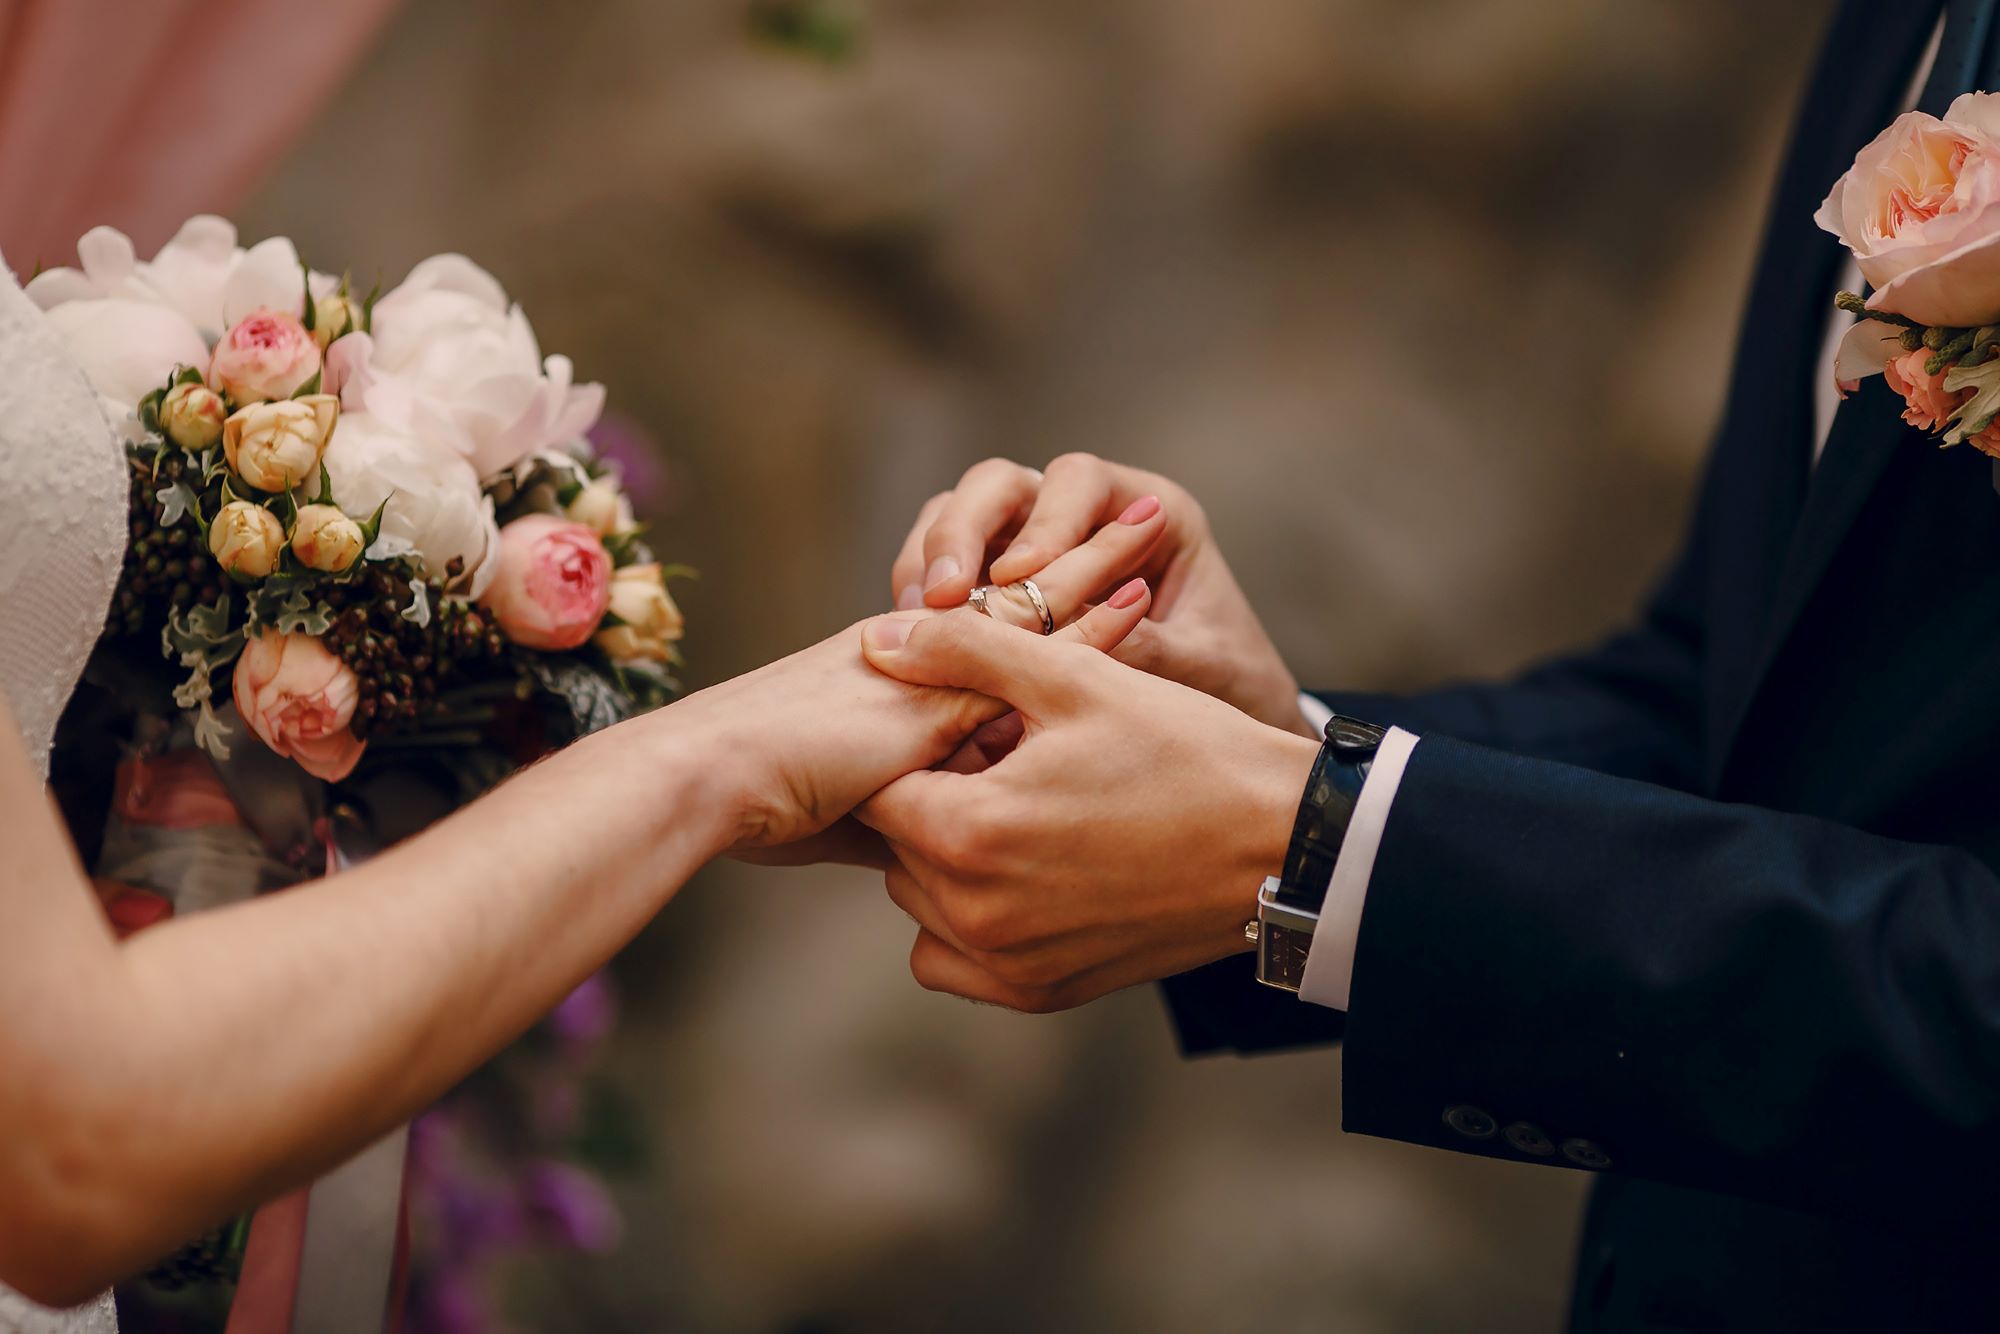 Festa de Casamento Simples: Um Casamento Lindo e Econômico